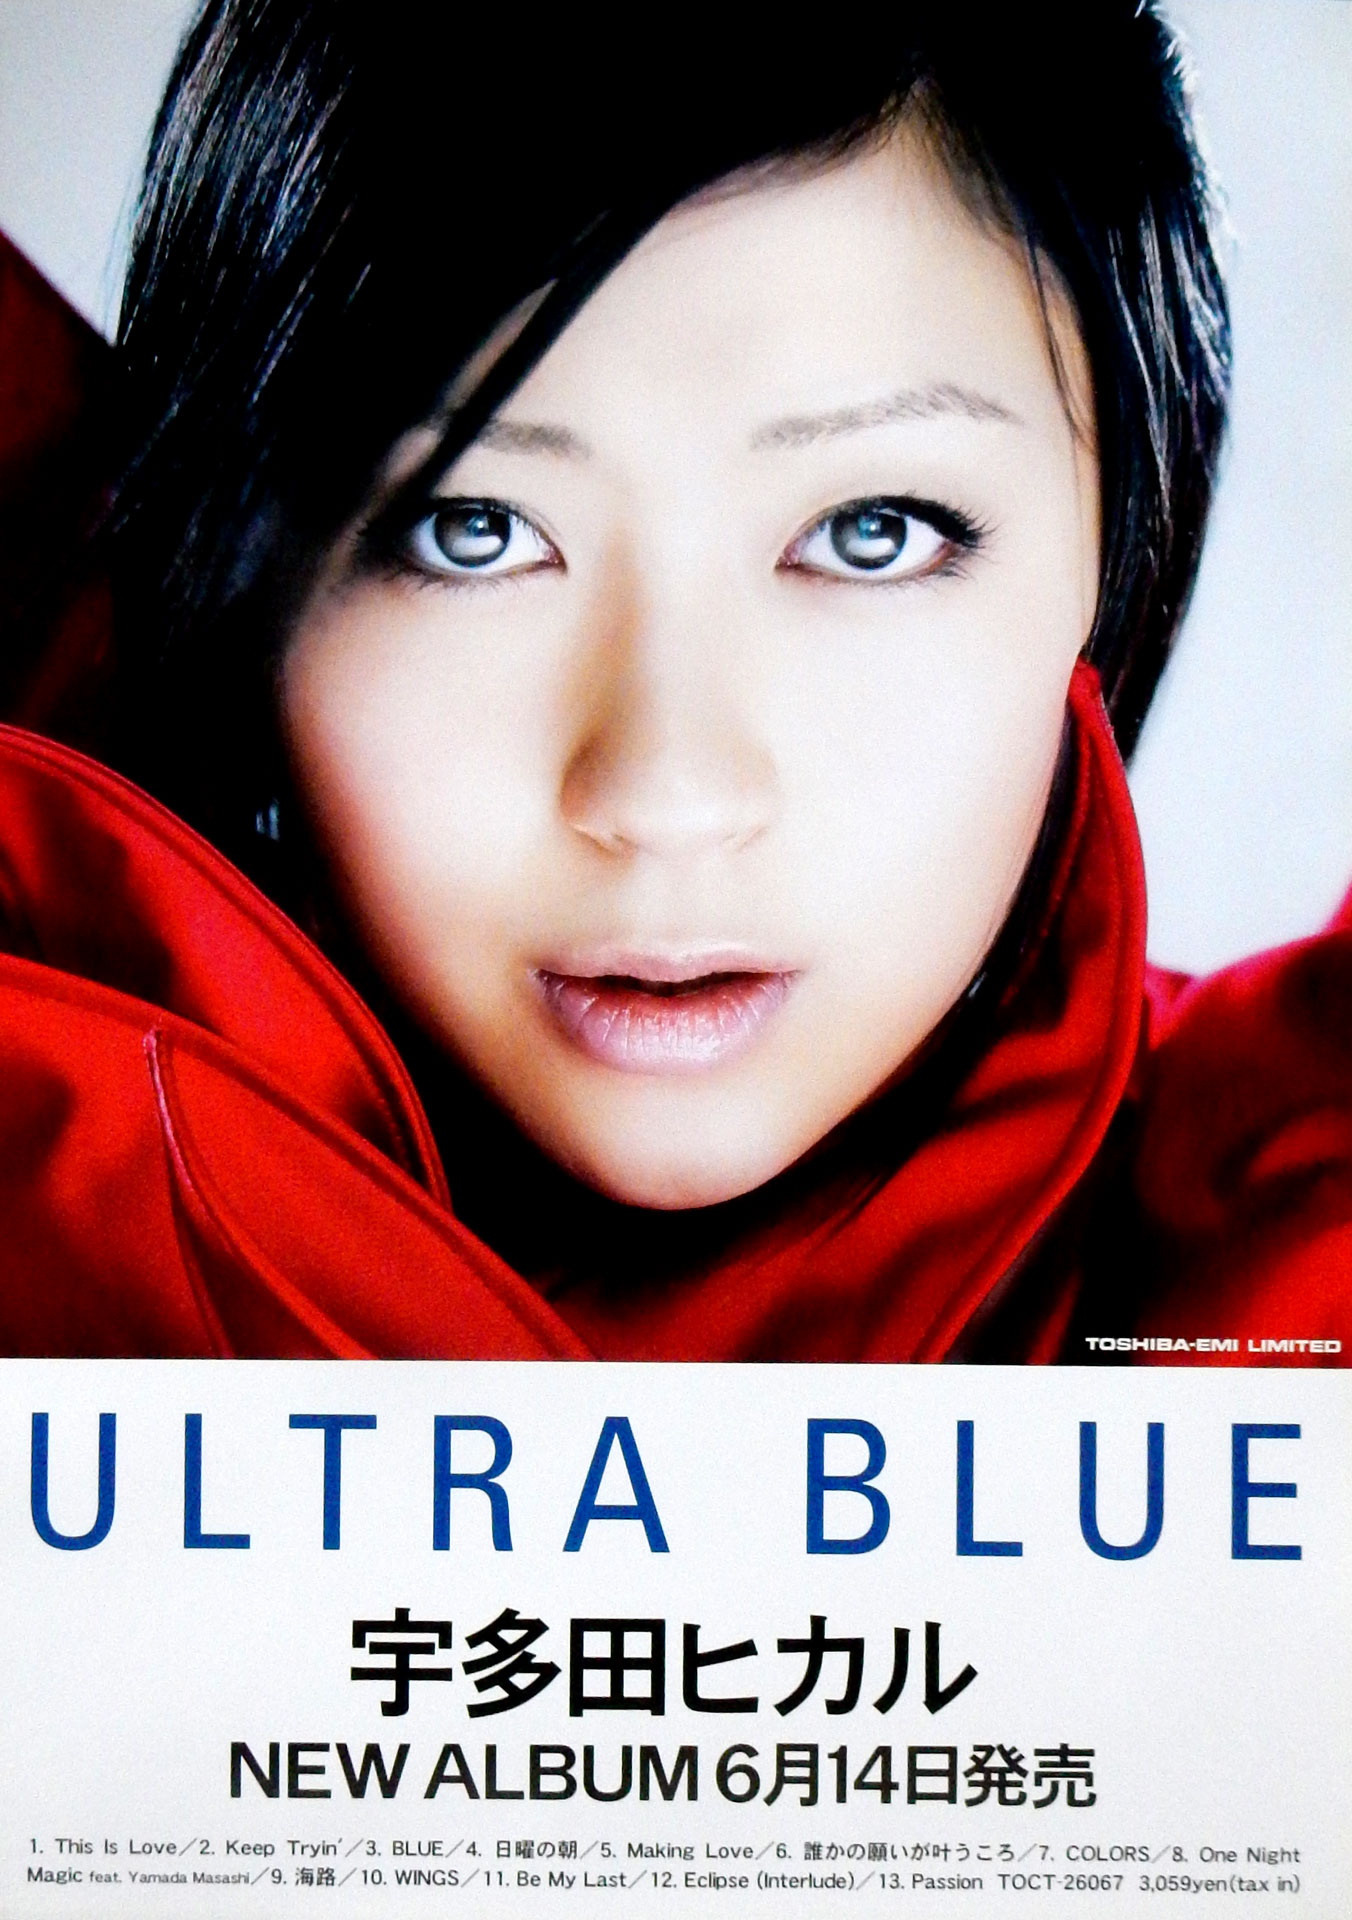 宇多田ヒカル 「ULTRA BLUE」のポスター